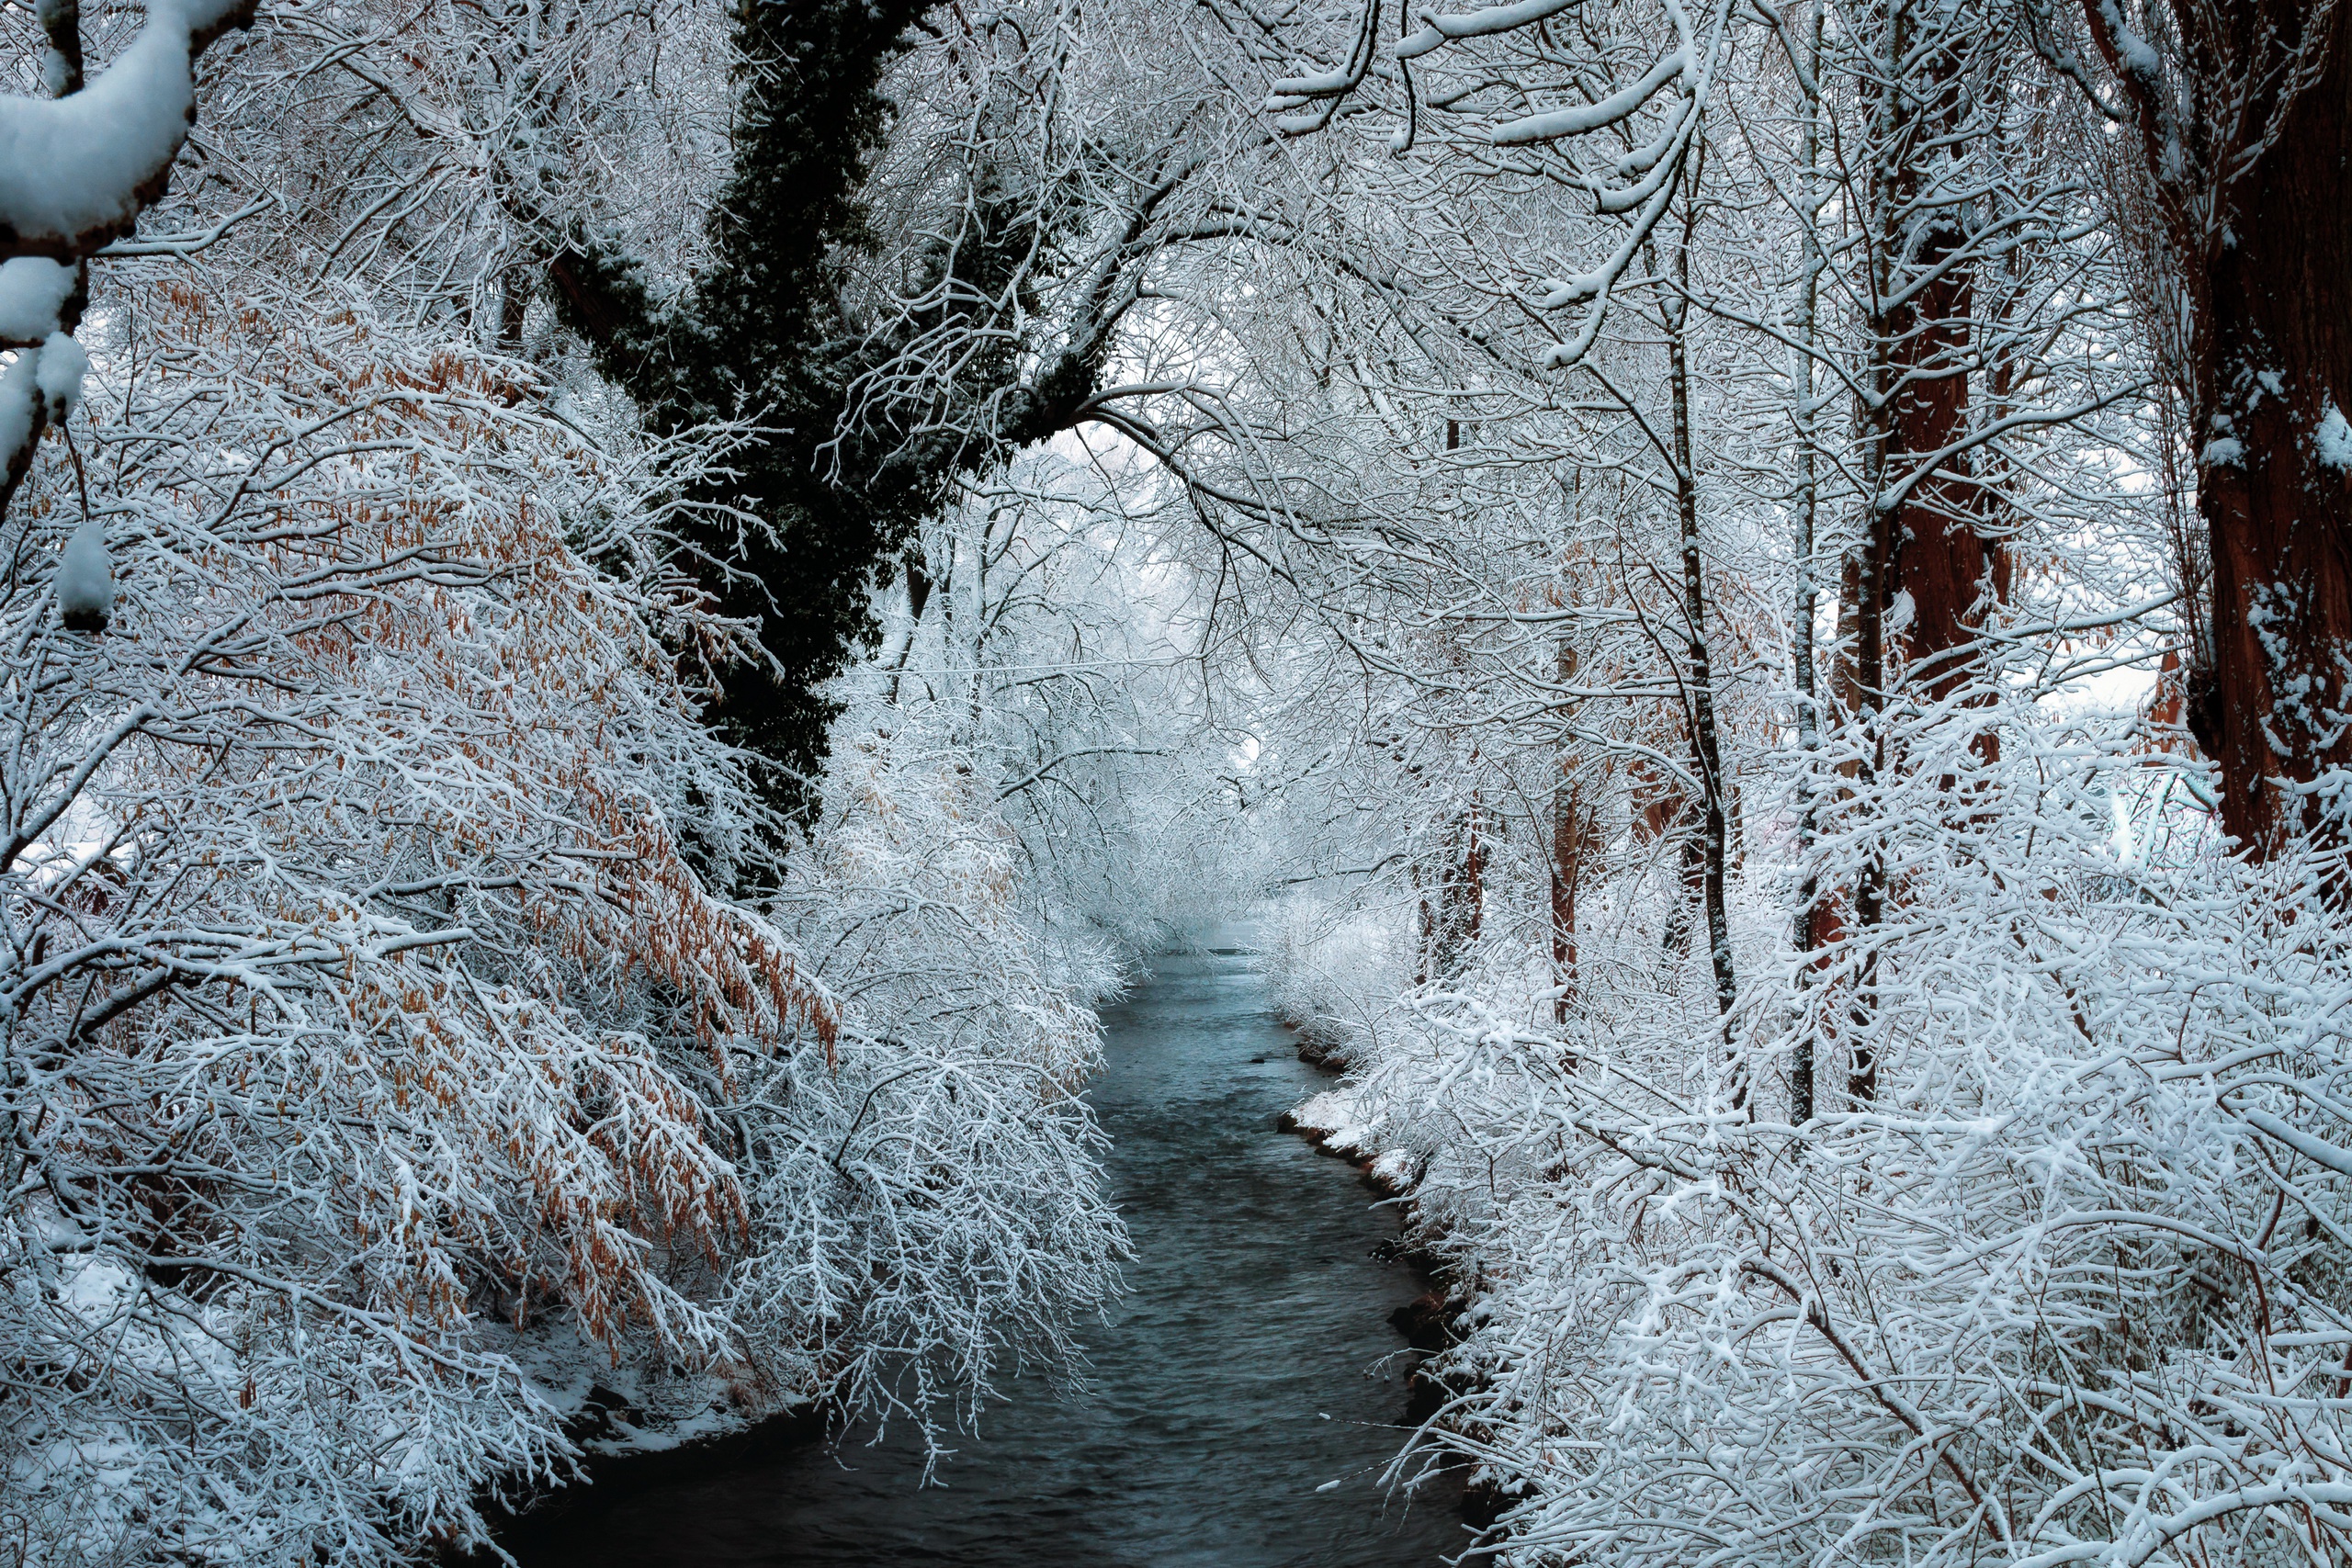 Скачать обои бесплатно Зима, Природа, Река, Снег, Дерево, Земля/природа картинка на рабочий стол ПК